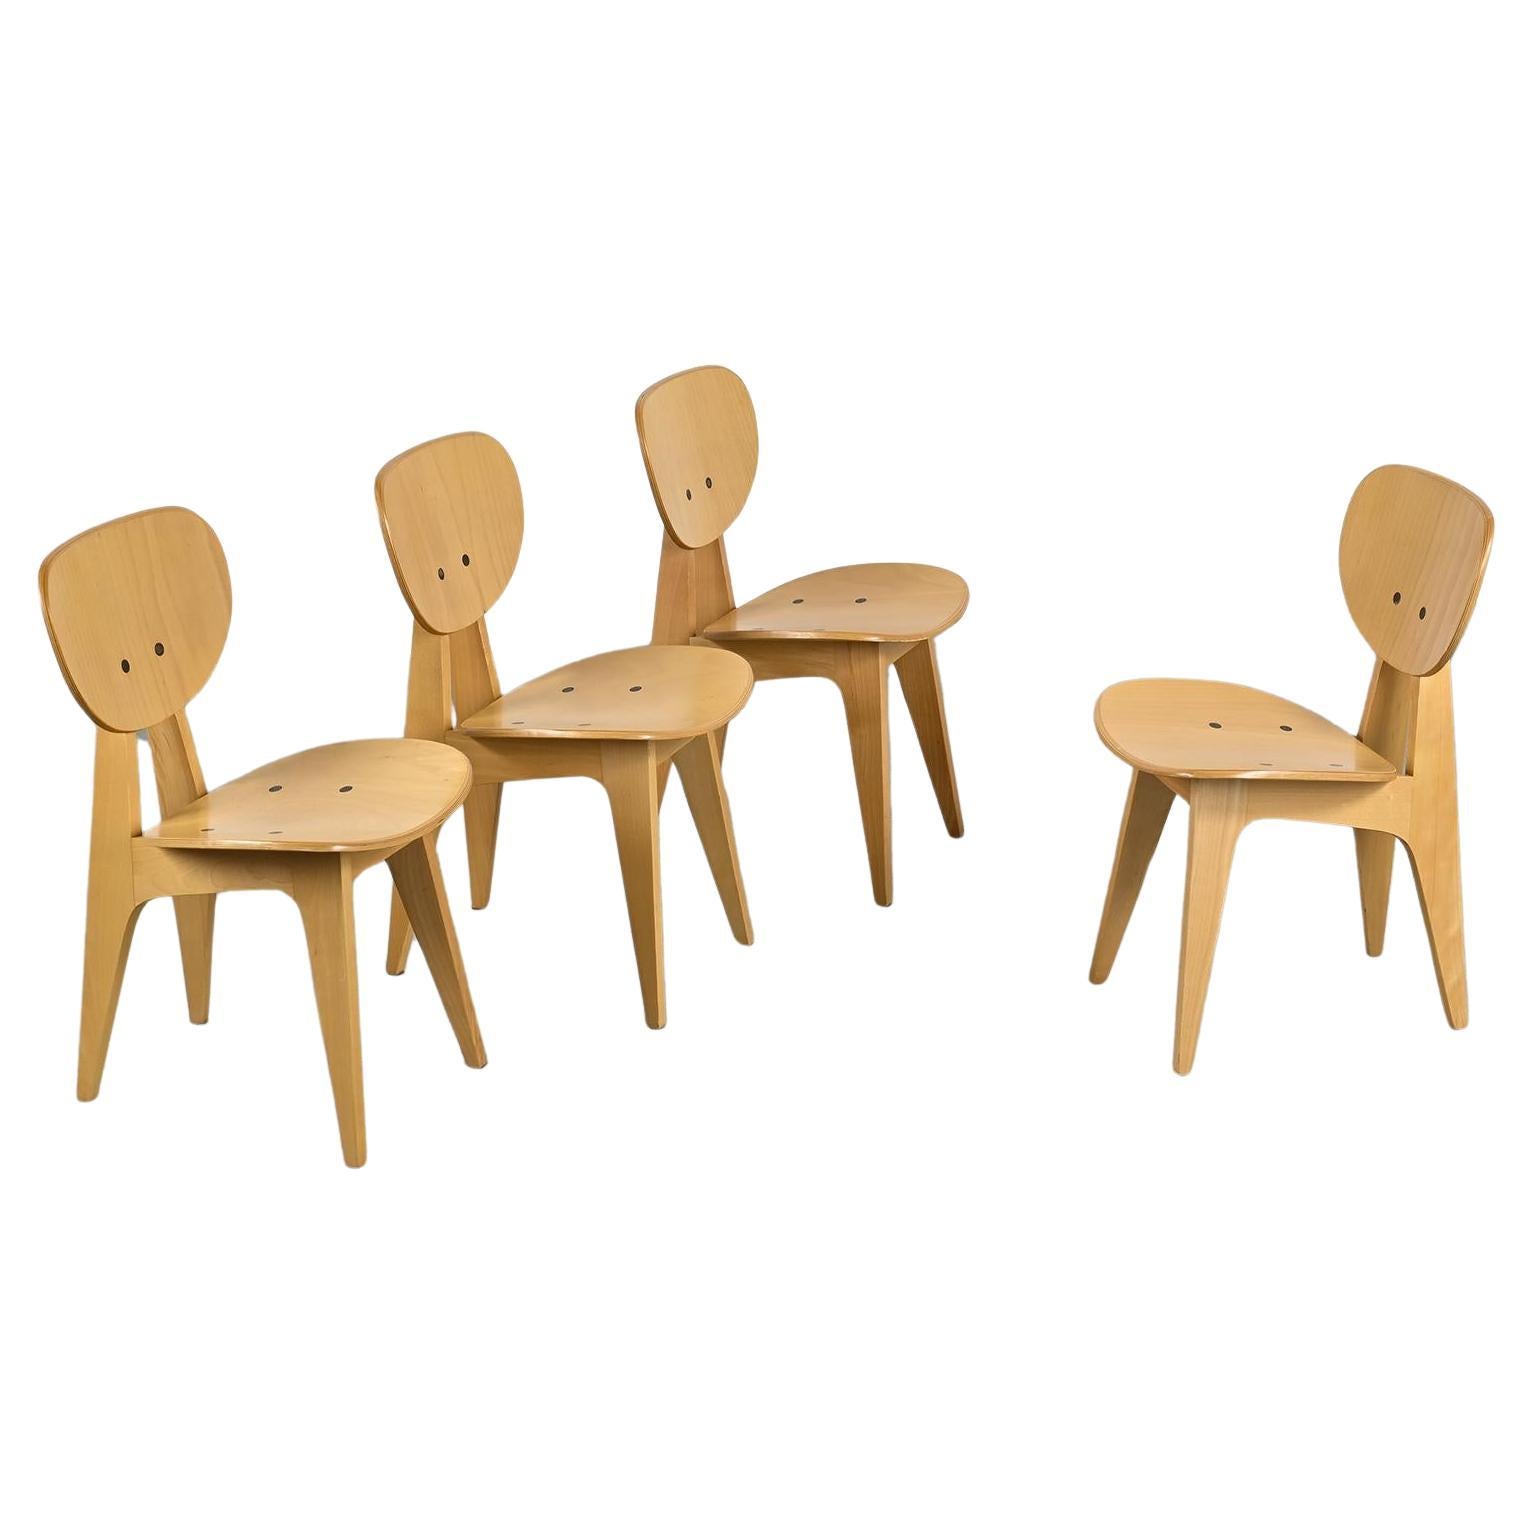 Chairs 3221 by Jenzo Sakakura for Tendo Mokko, 1950s, set of 4